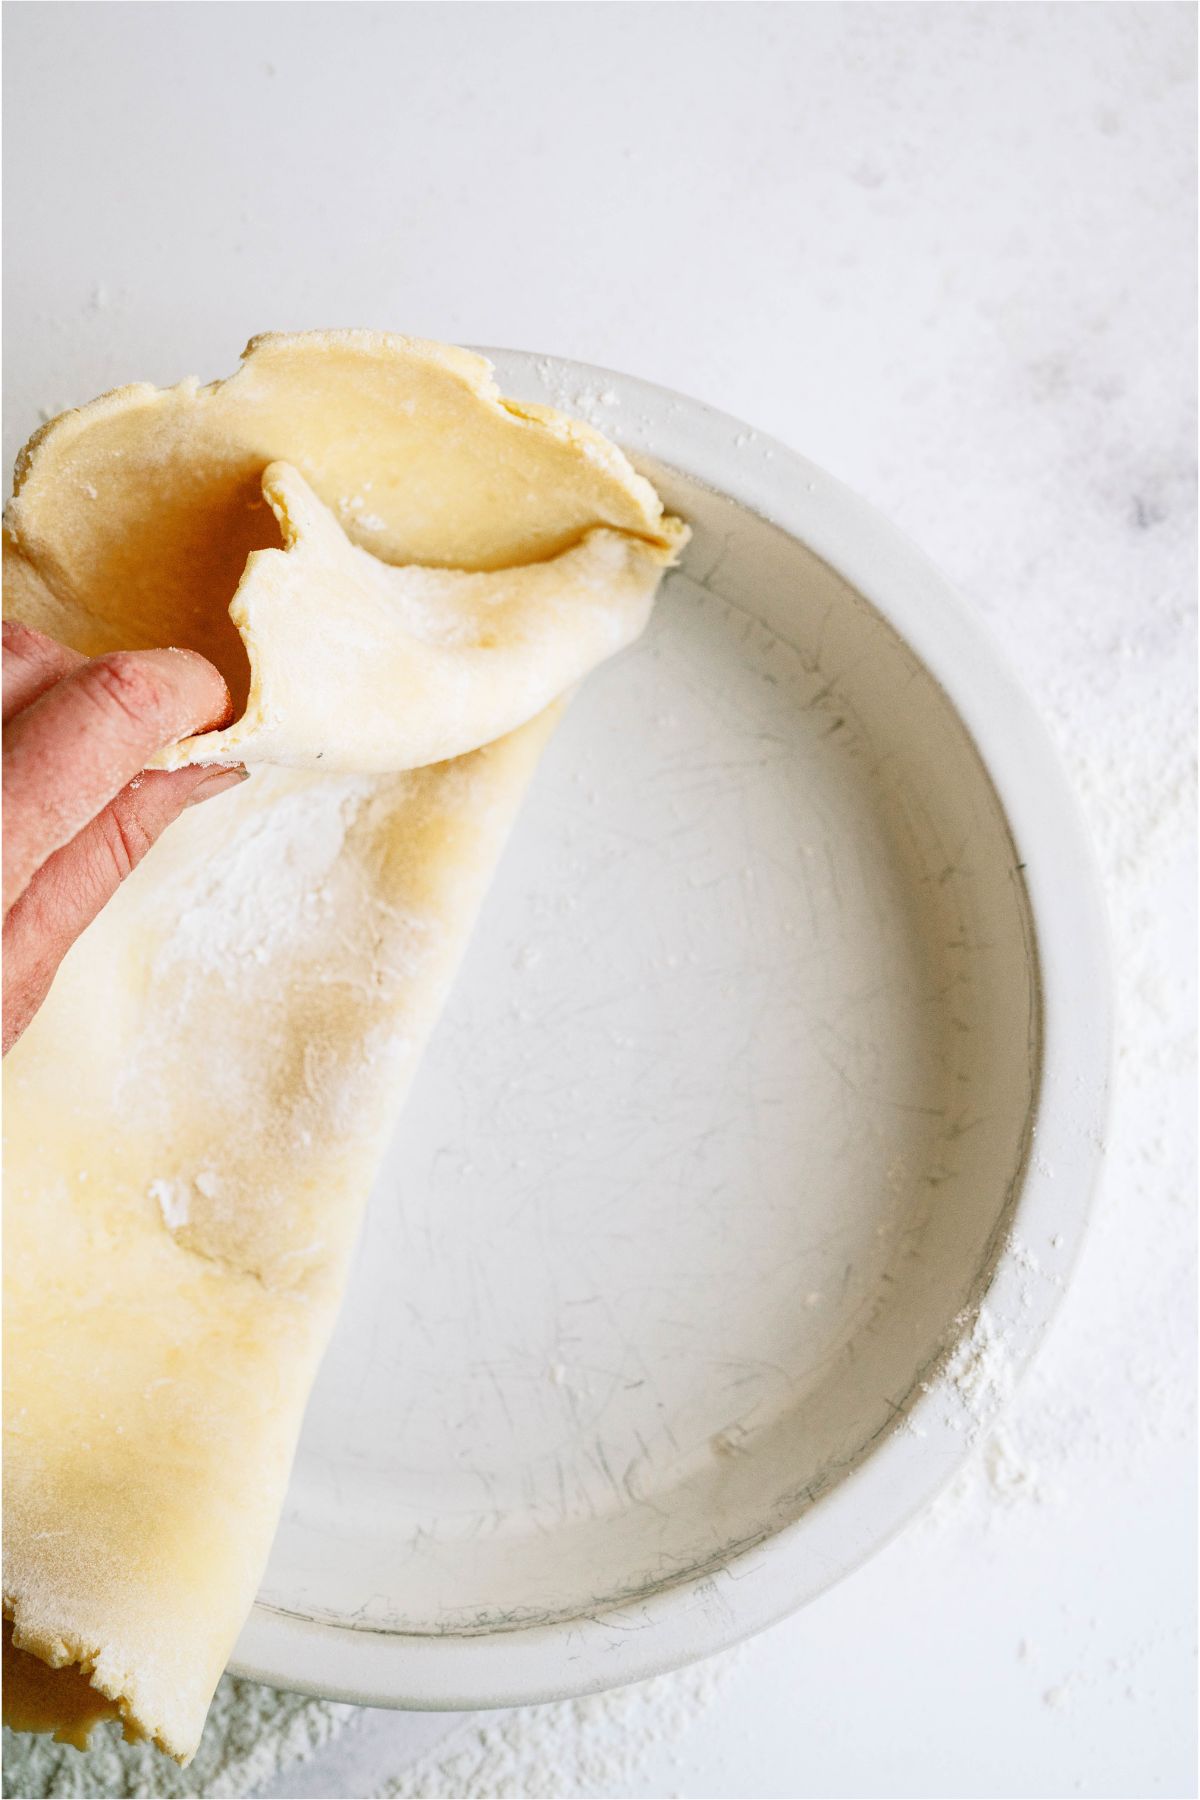 Placing bottom pie crust into pan